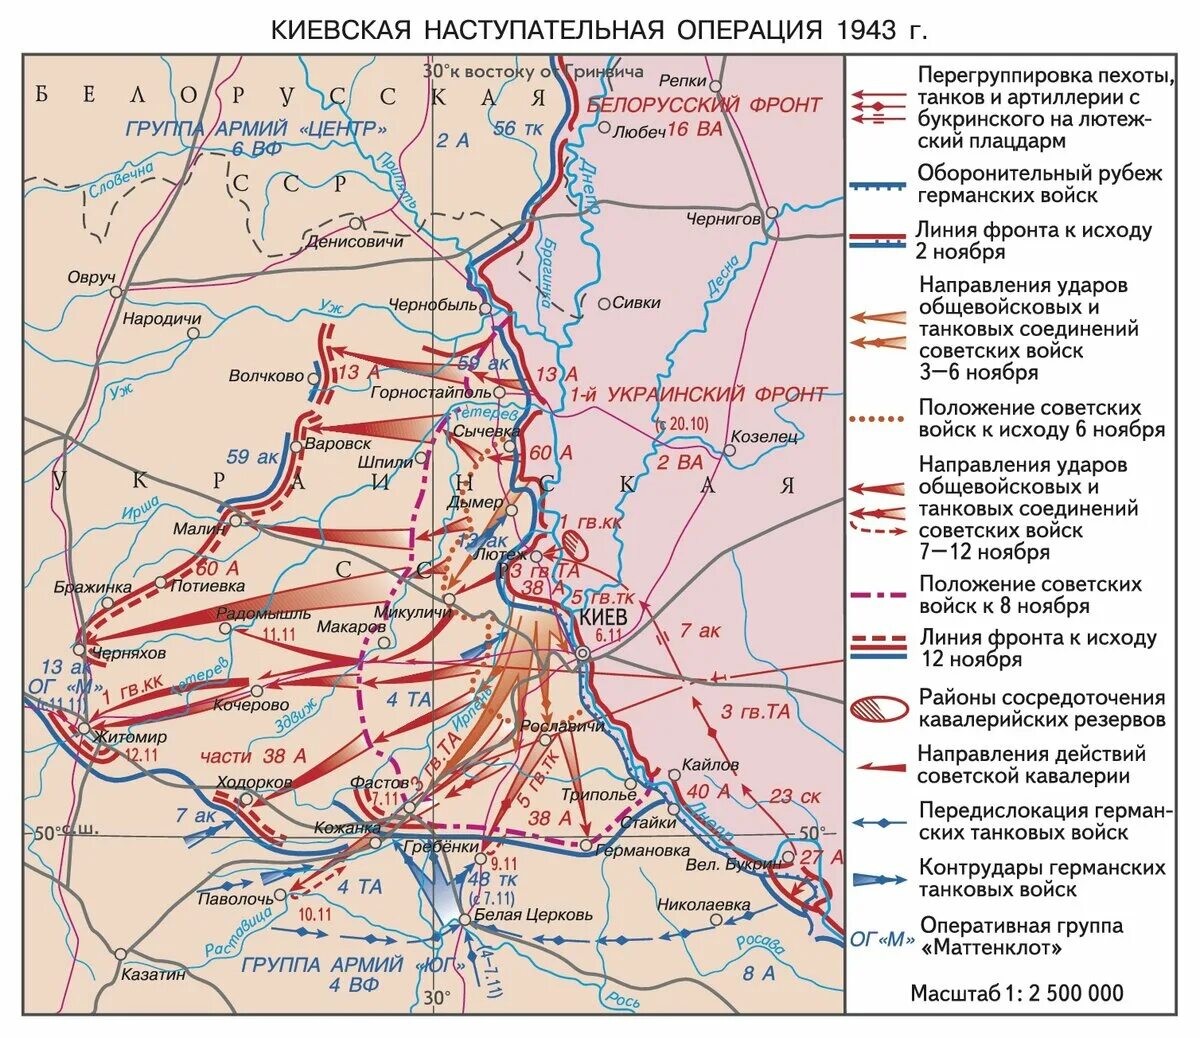 В какой битве был освобожден. Киевская стратегическая наступательная операция 3-13 ноября 1943 г.. Киевская оборонительная операция 1943. Киевская оборонительная операция 13 ноября 23 декабря 1943. Киевская оборонительная операция 1941 года.